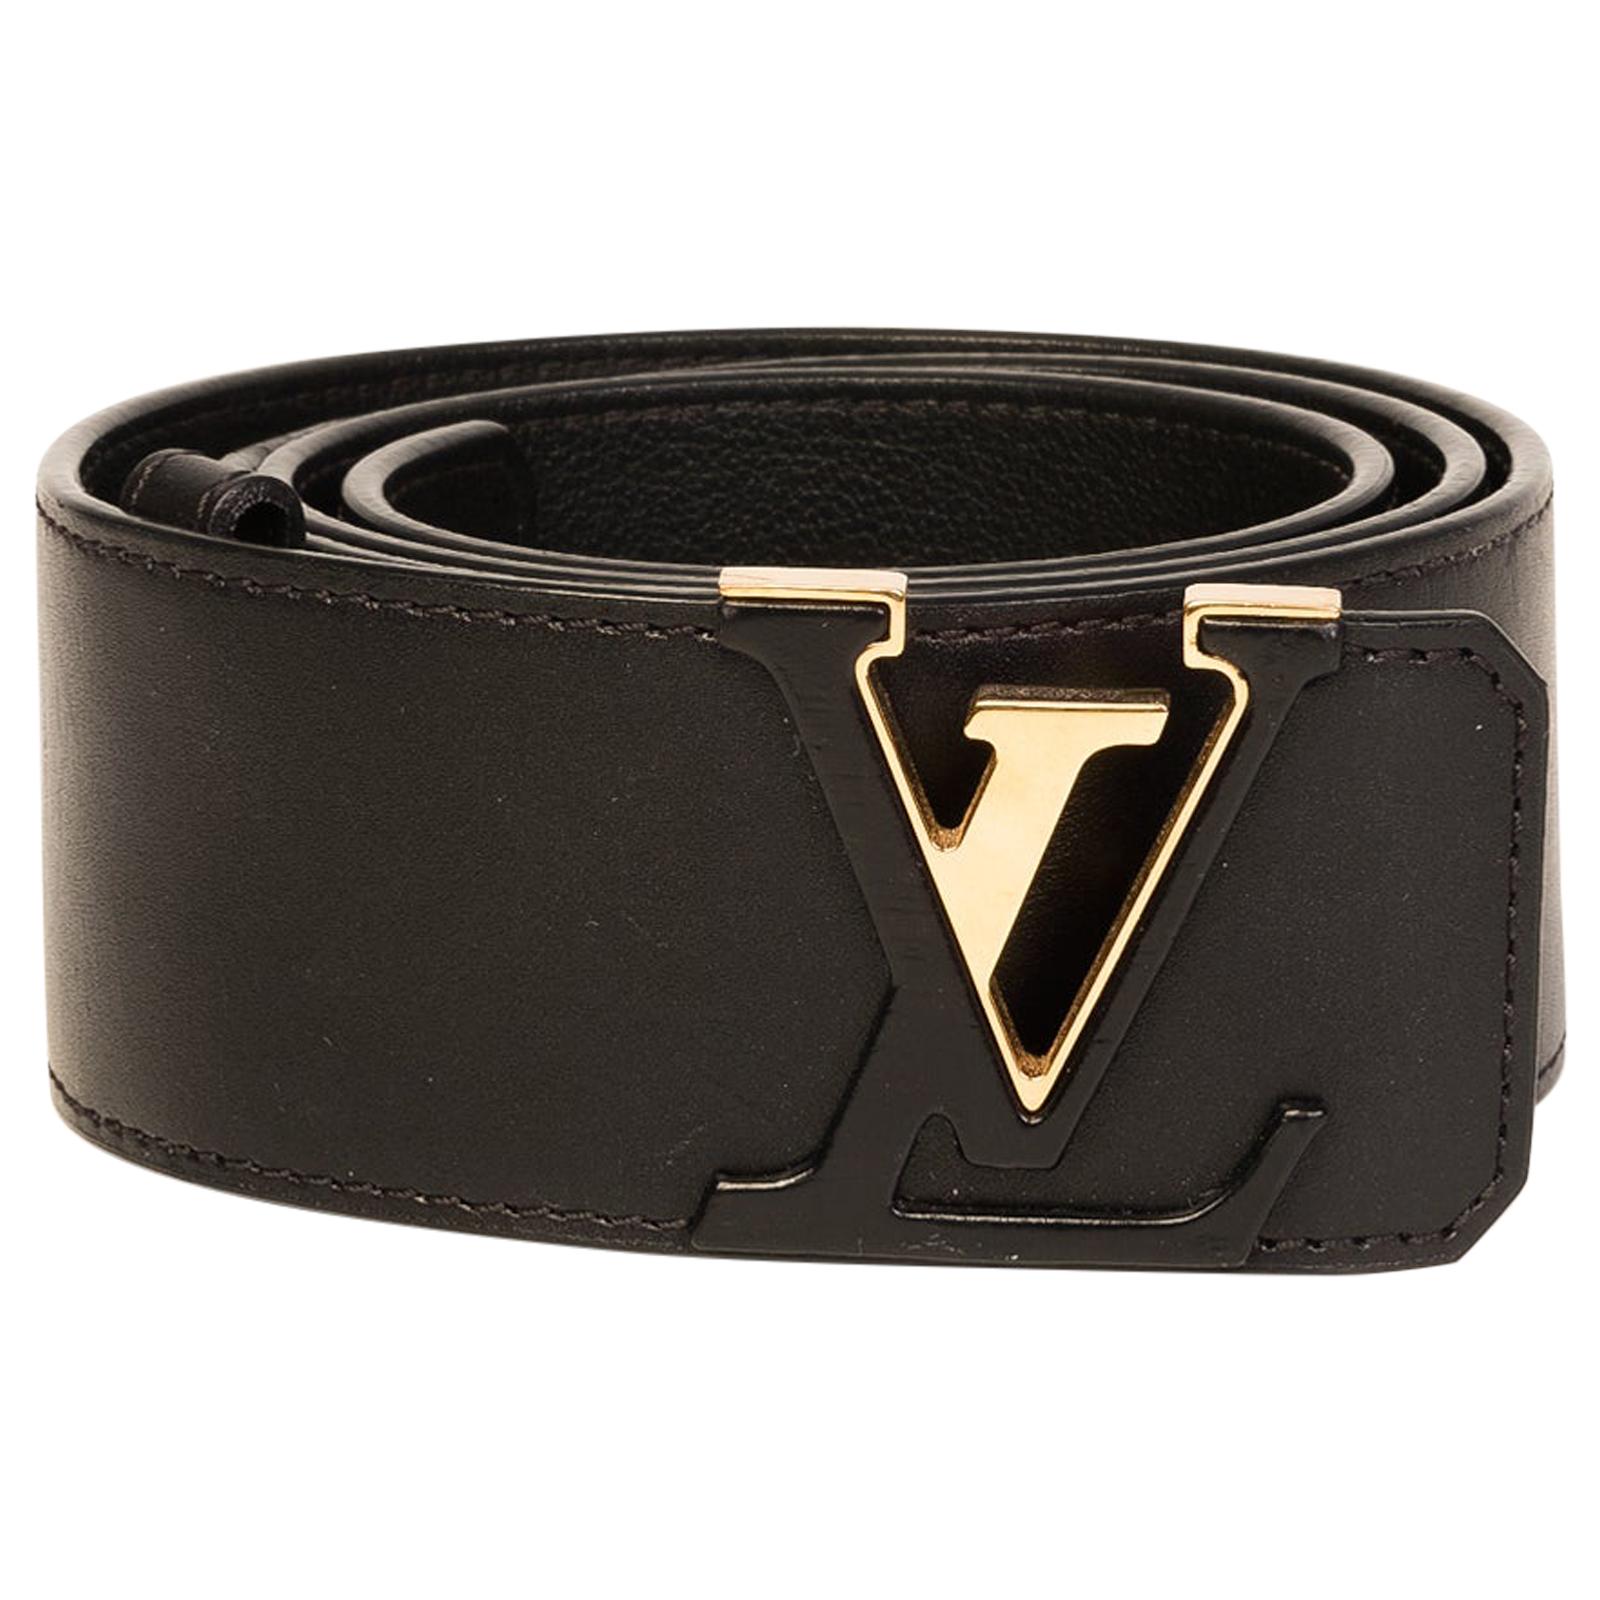 Louis Vuitton LV Initiales 30mm Reversible Belt